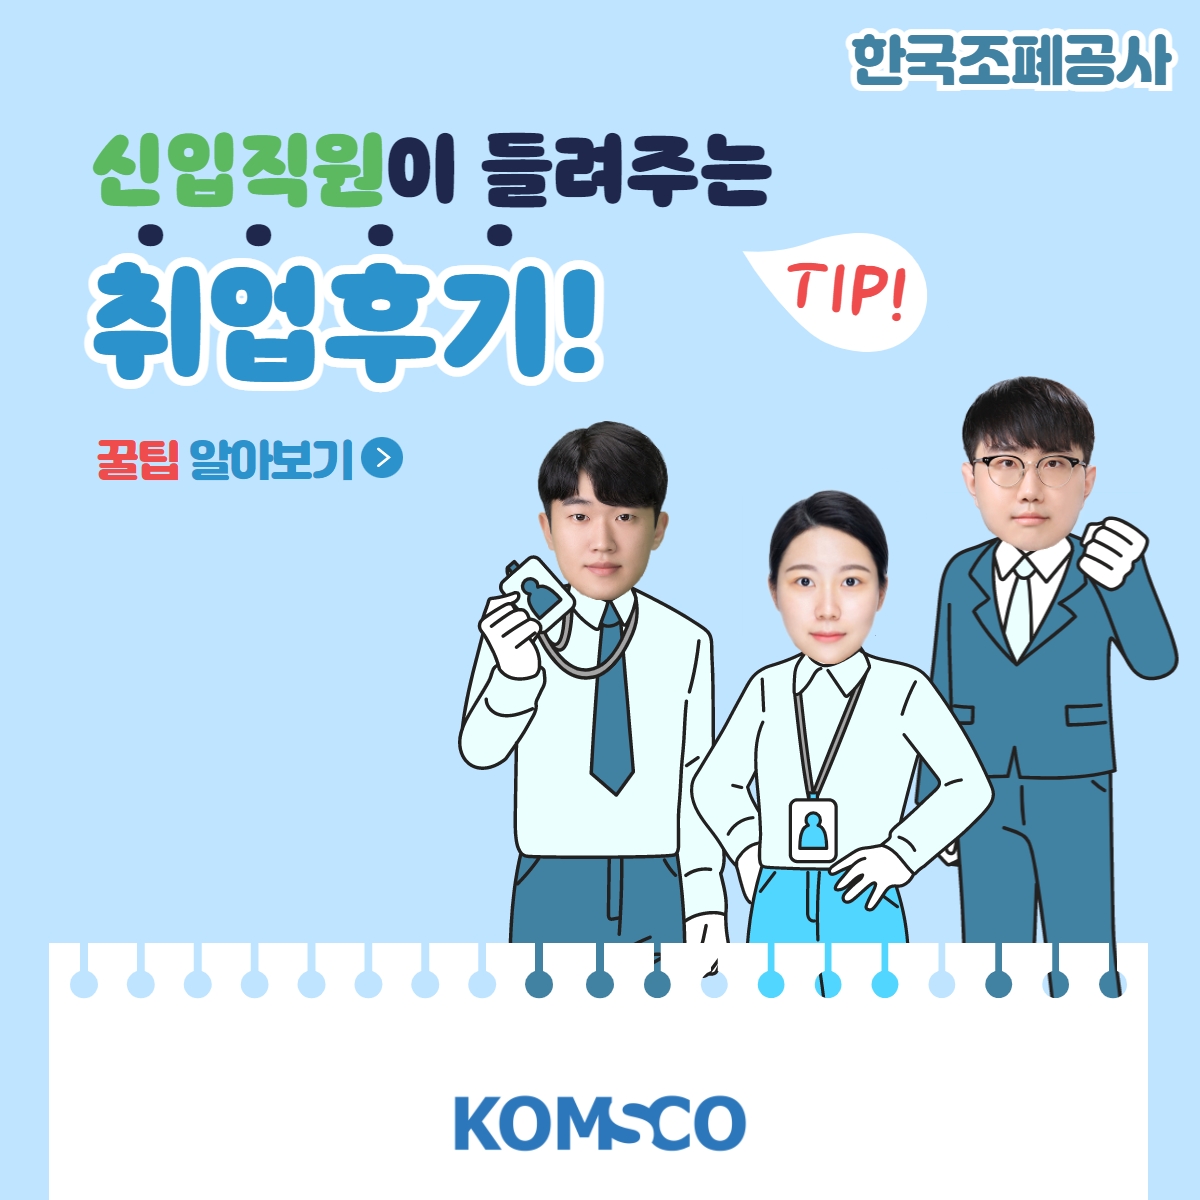 한국조폐공사 신입직원이 들려주는 취업후기! 꿀팁 알아보기